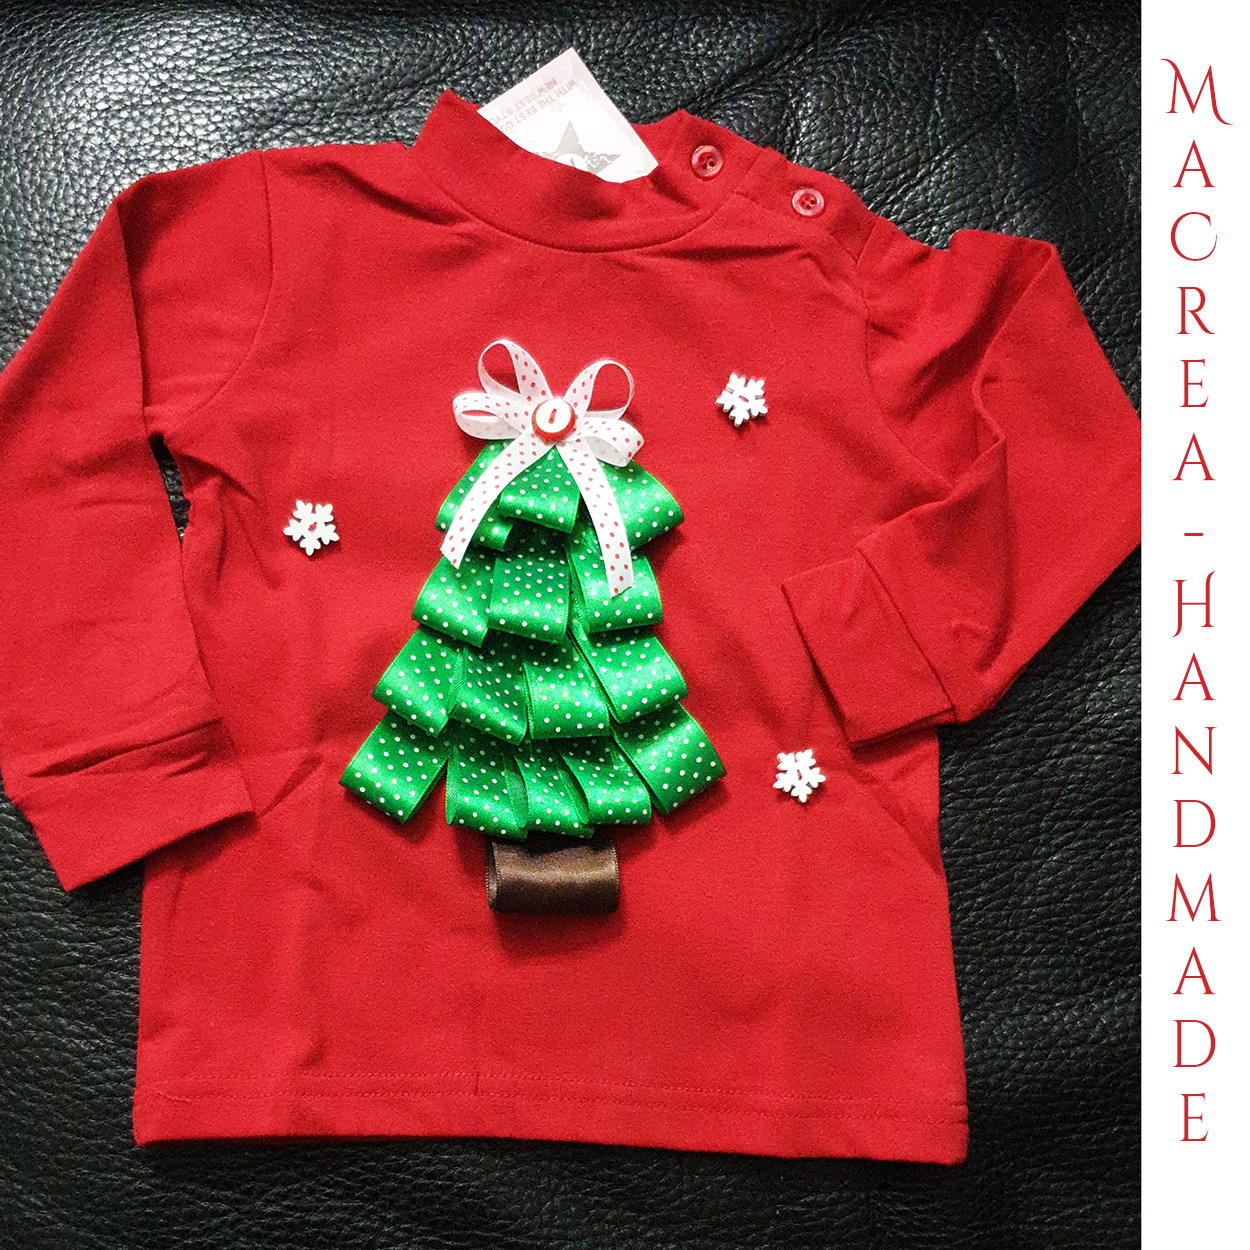 Maglietta natalizia cucita a mano by Macrea